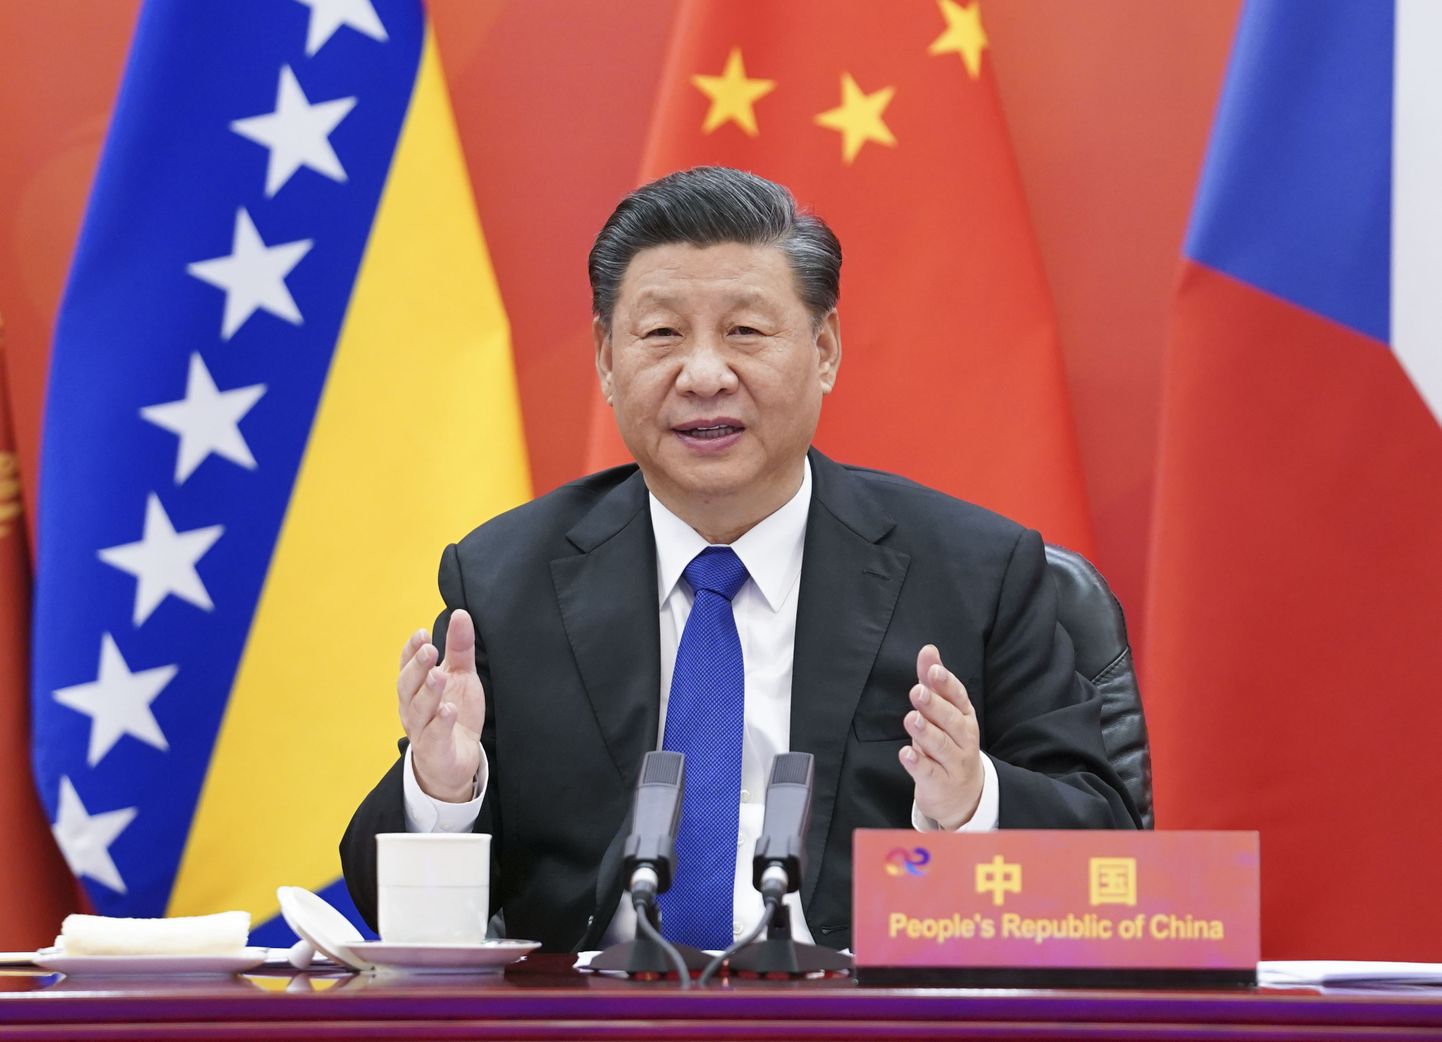 Hiina president Xi Jinping videotippkohtumisel Kesk- ja Ida-Euroopa riikide liidritega.